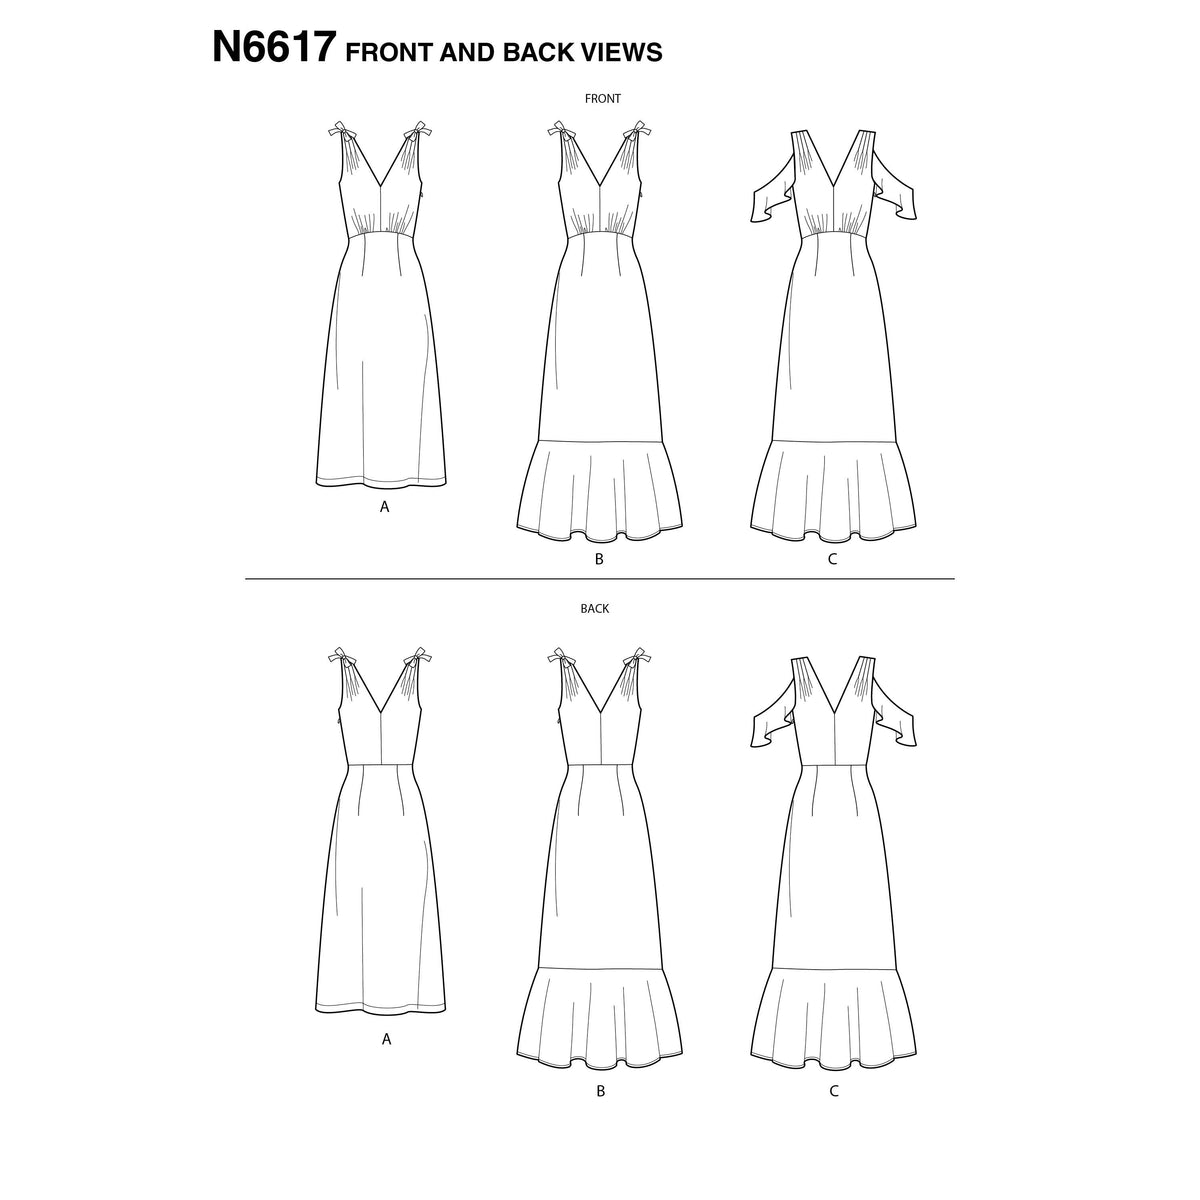 6617 New Look Sewing Pattern N6617 Misses' Dresses